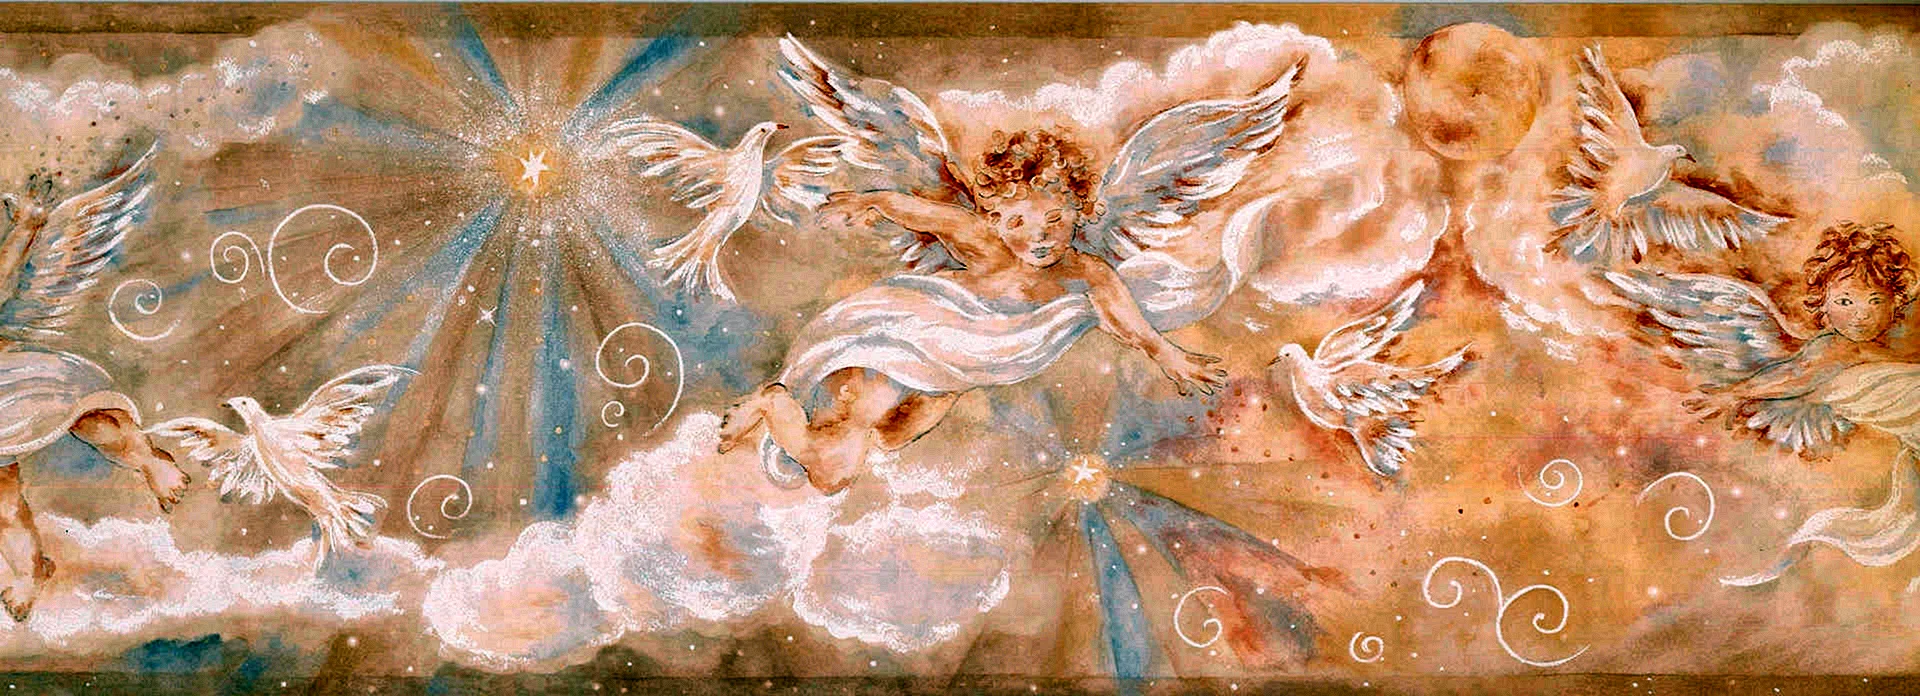 Angel aesthetic Wallpaper